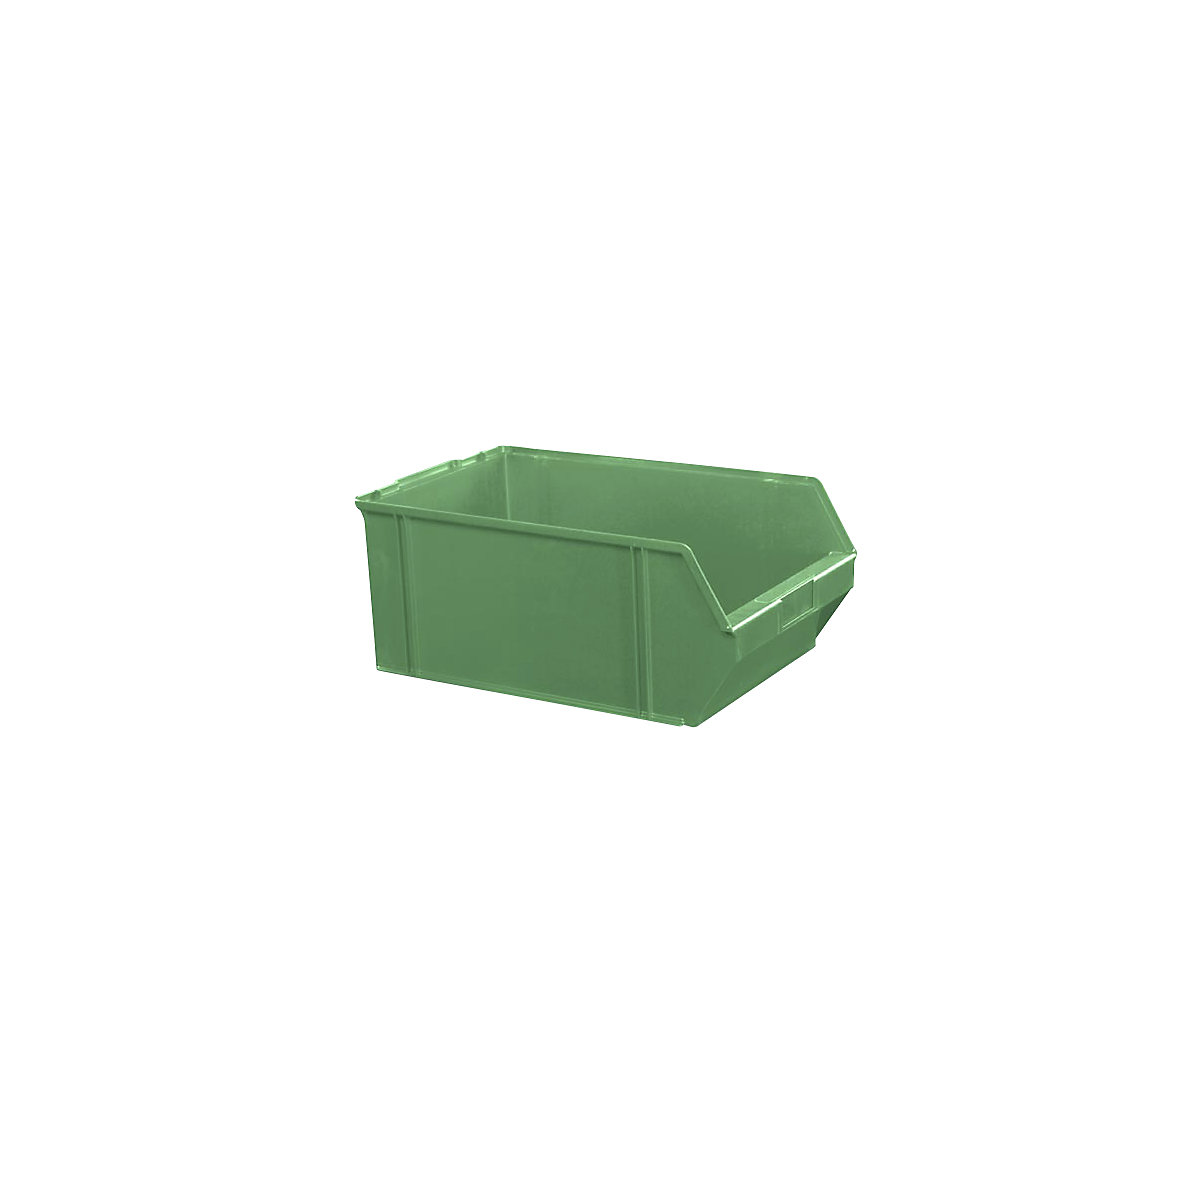 Sichtlagerkasten aus Polystyrol, Länge 500 mm, BxH 309 x 200 mm, VE 4 Stk, grün-17